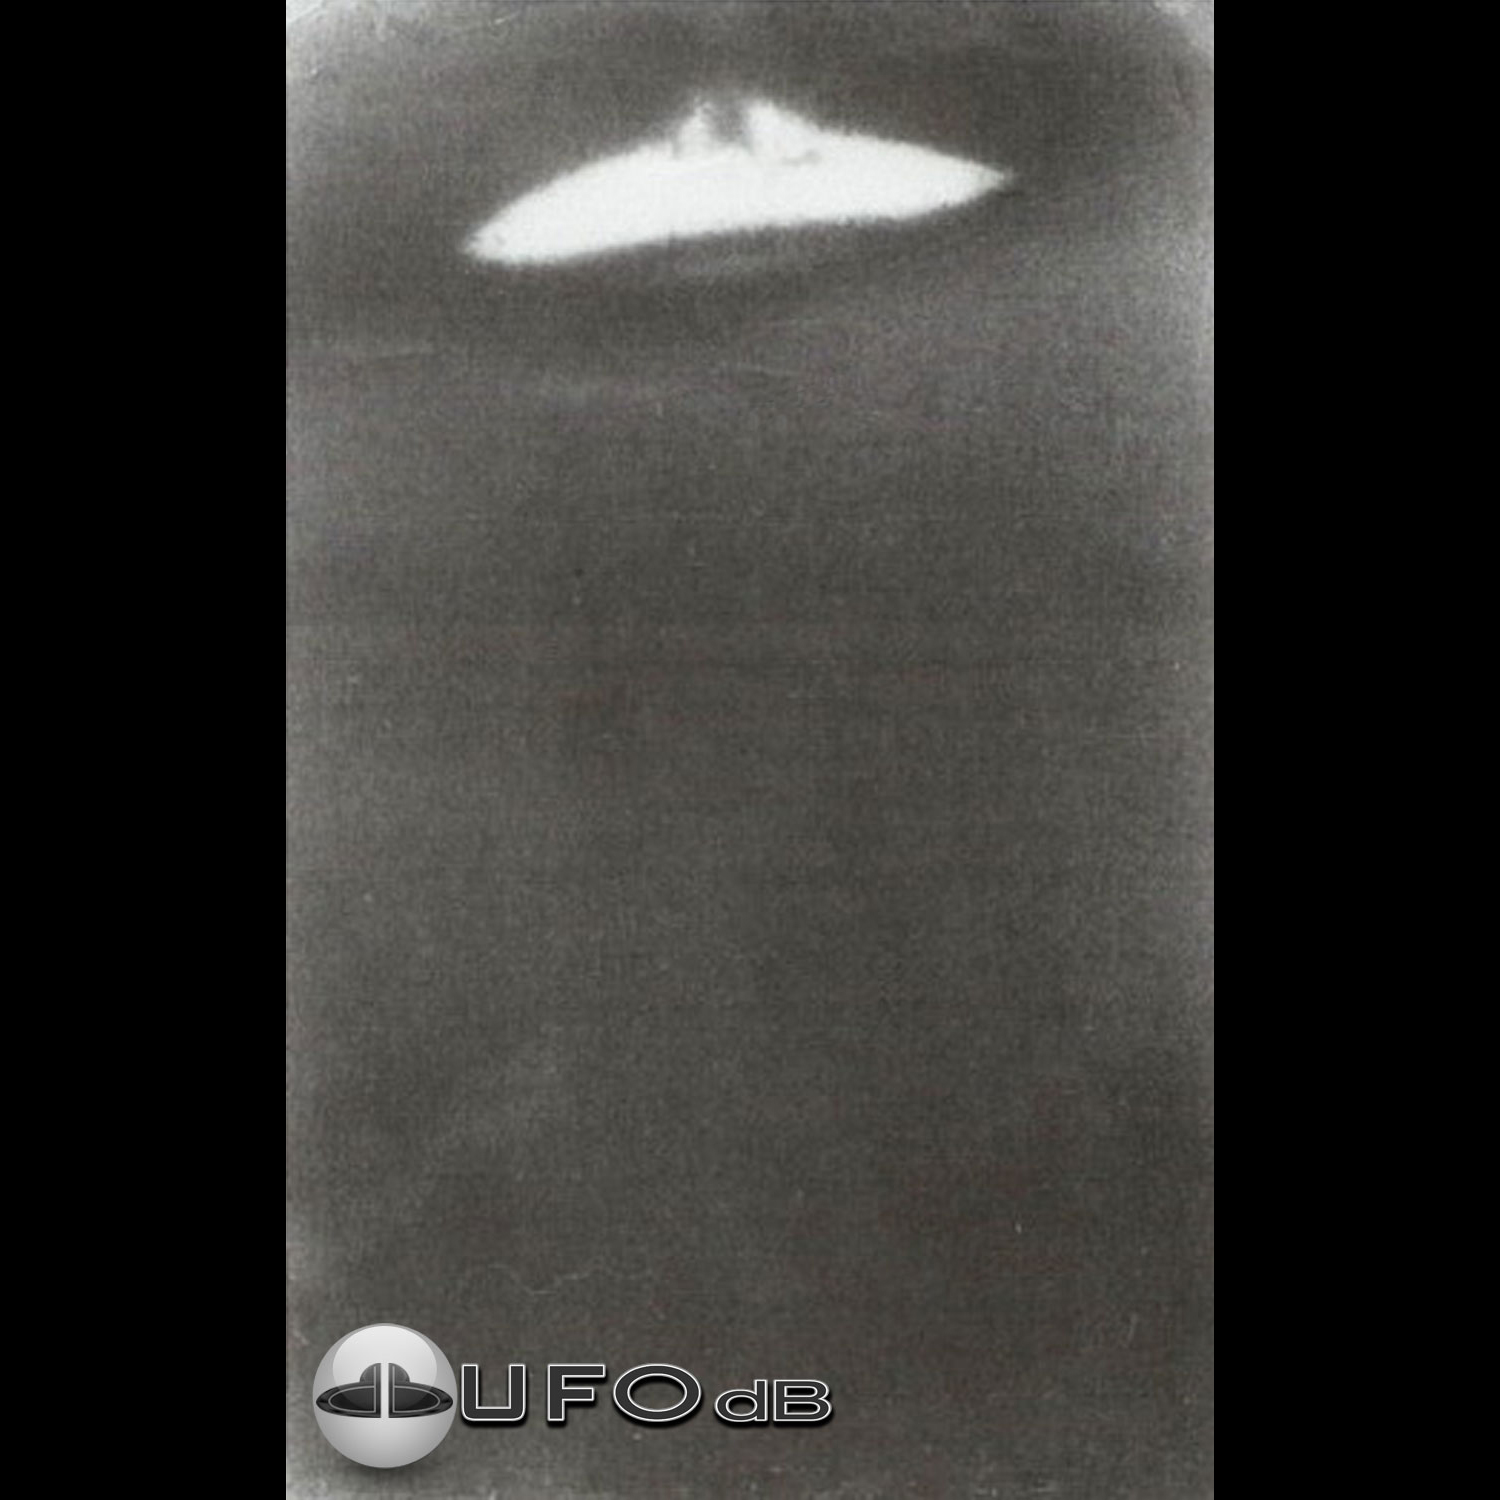 Russia UFO sighting| Dalnegorsk, Primorsky Krai UFO picture | 1989 UFO Picture #141-1